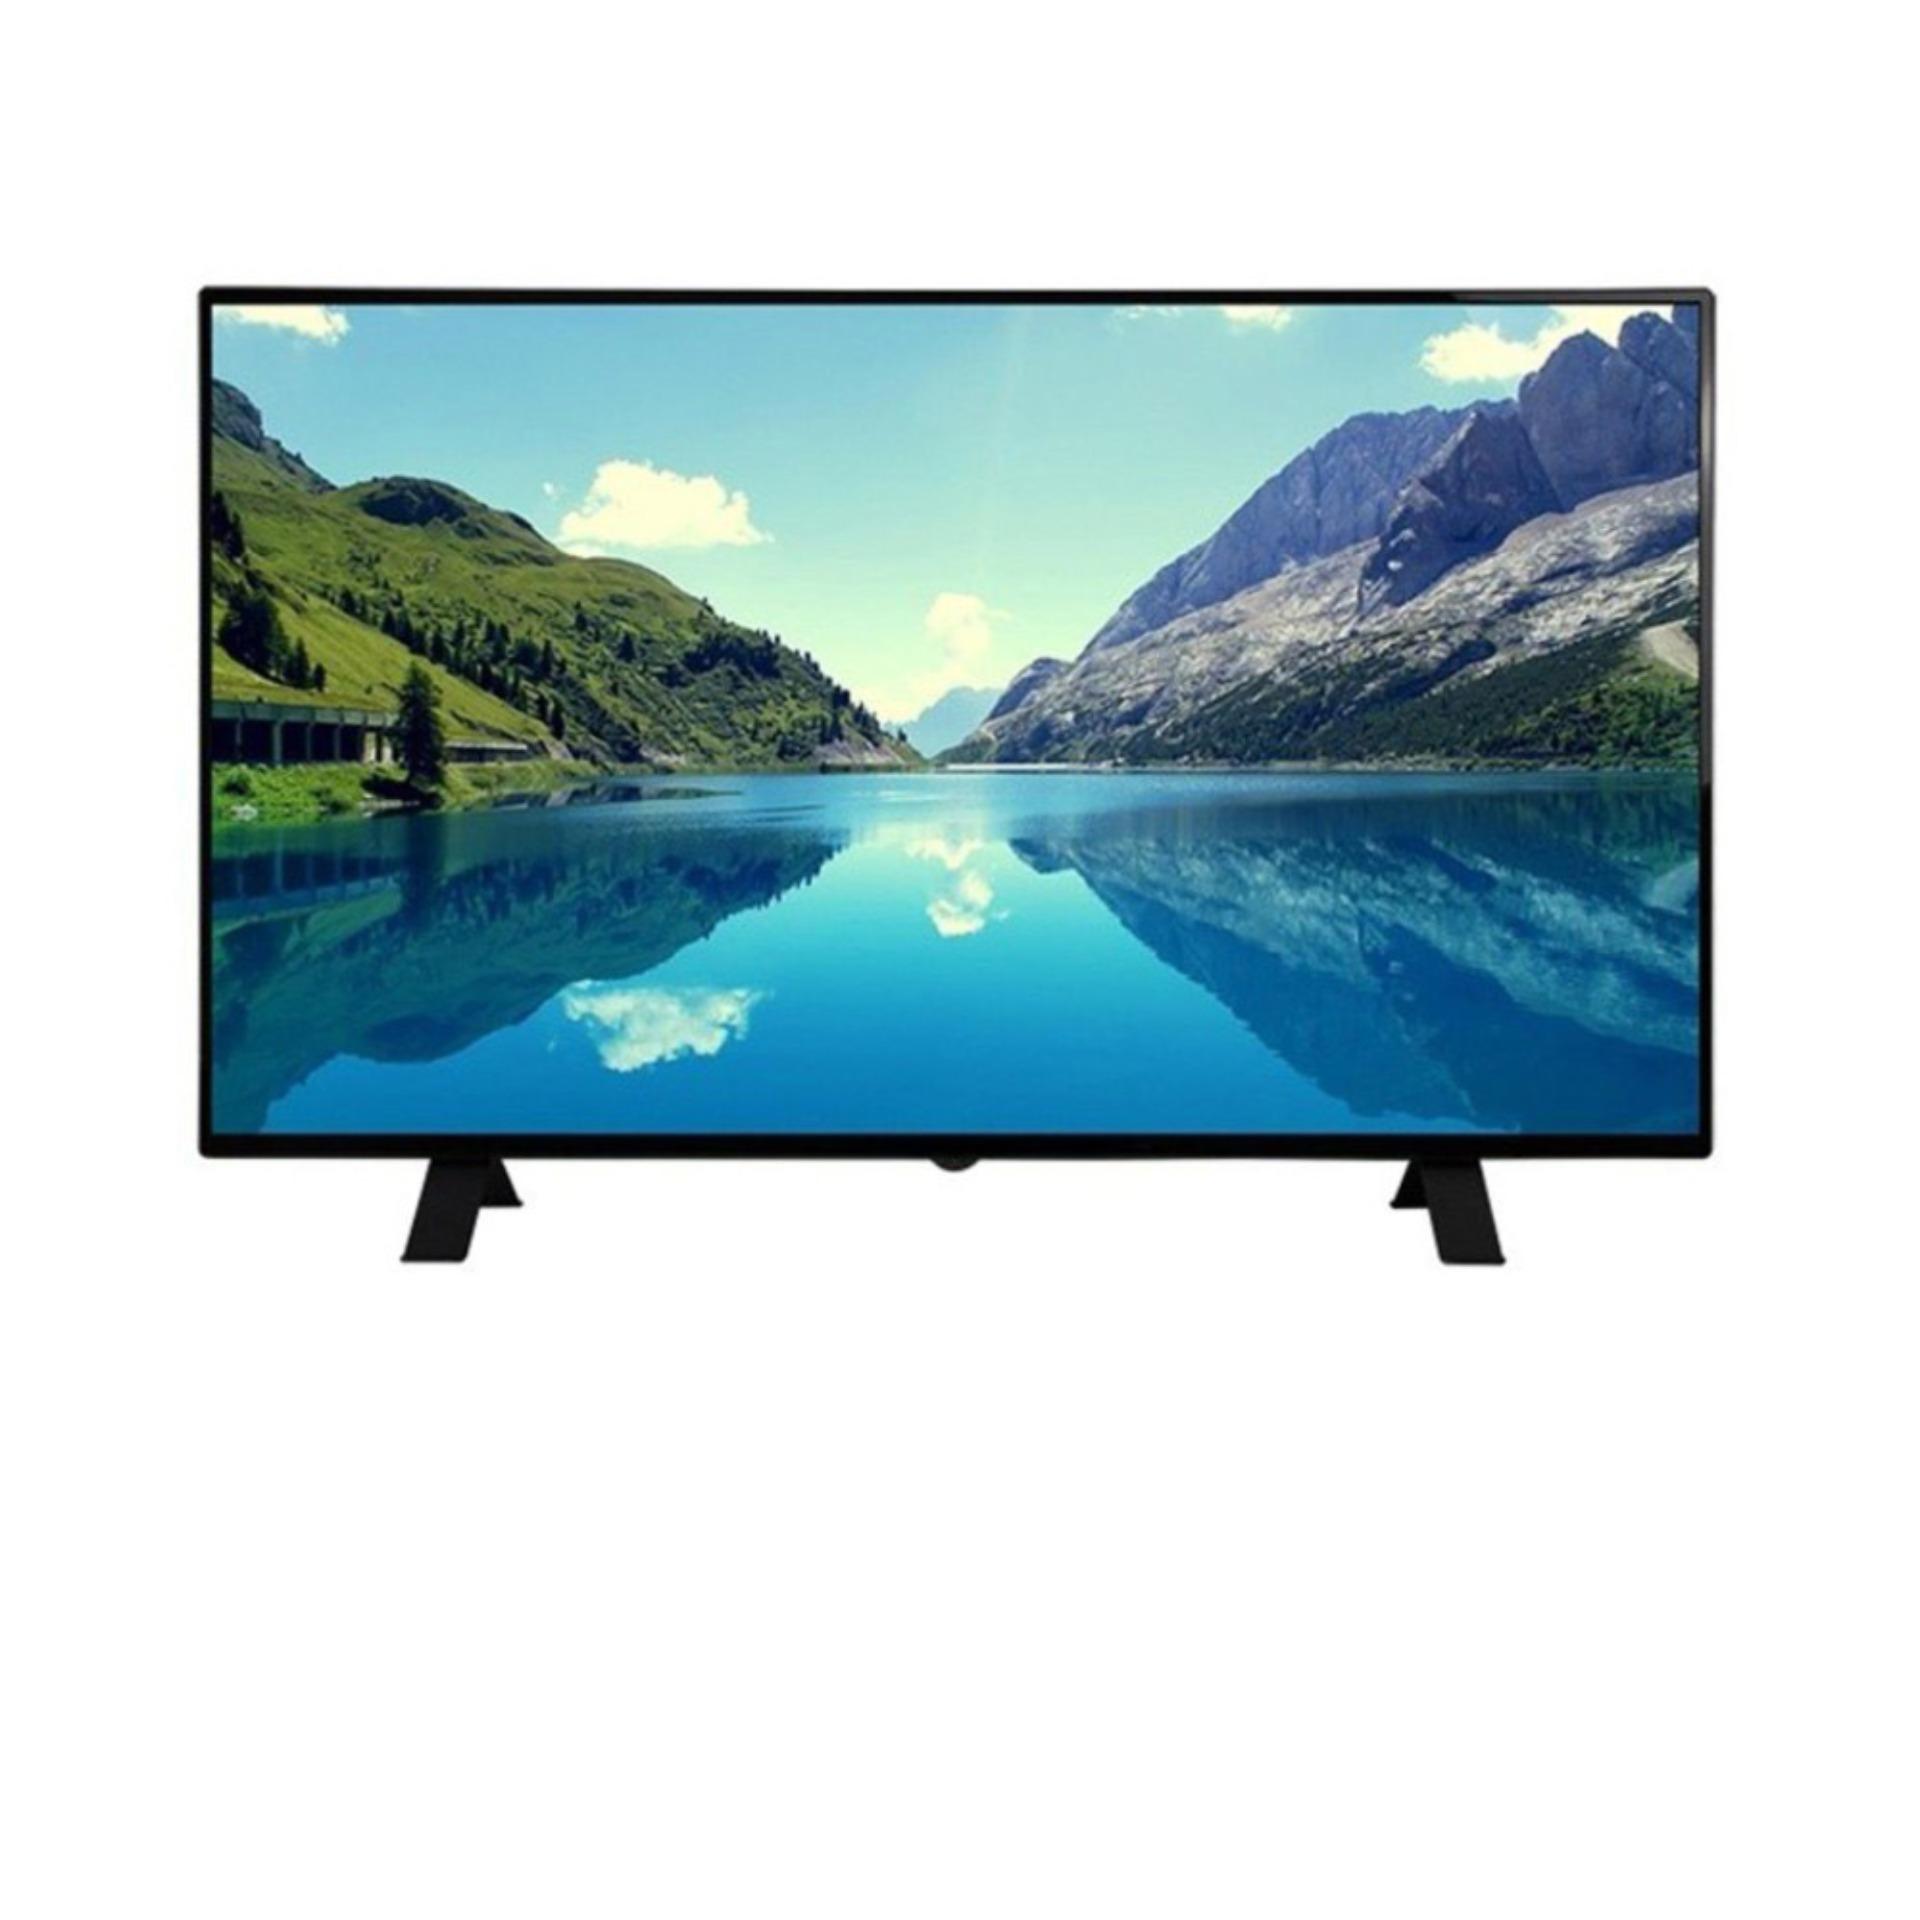 Smart TV Led Arirang 48 inch Full HD - Model AR-4888FS (Đen) - Hãng phân phối chính thức